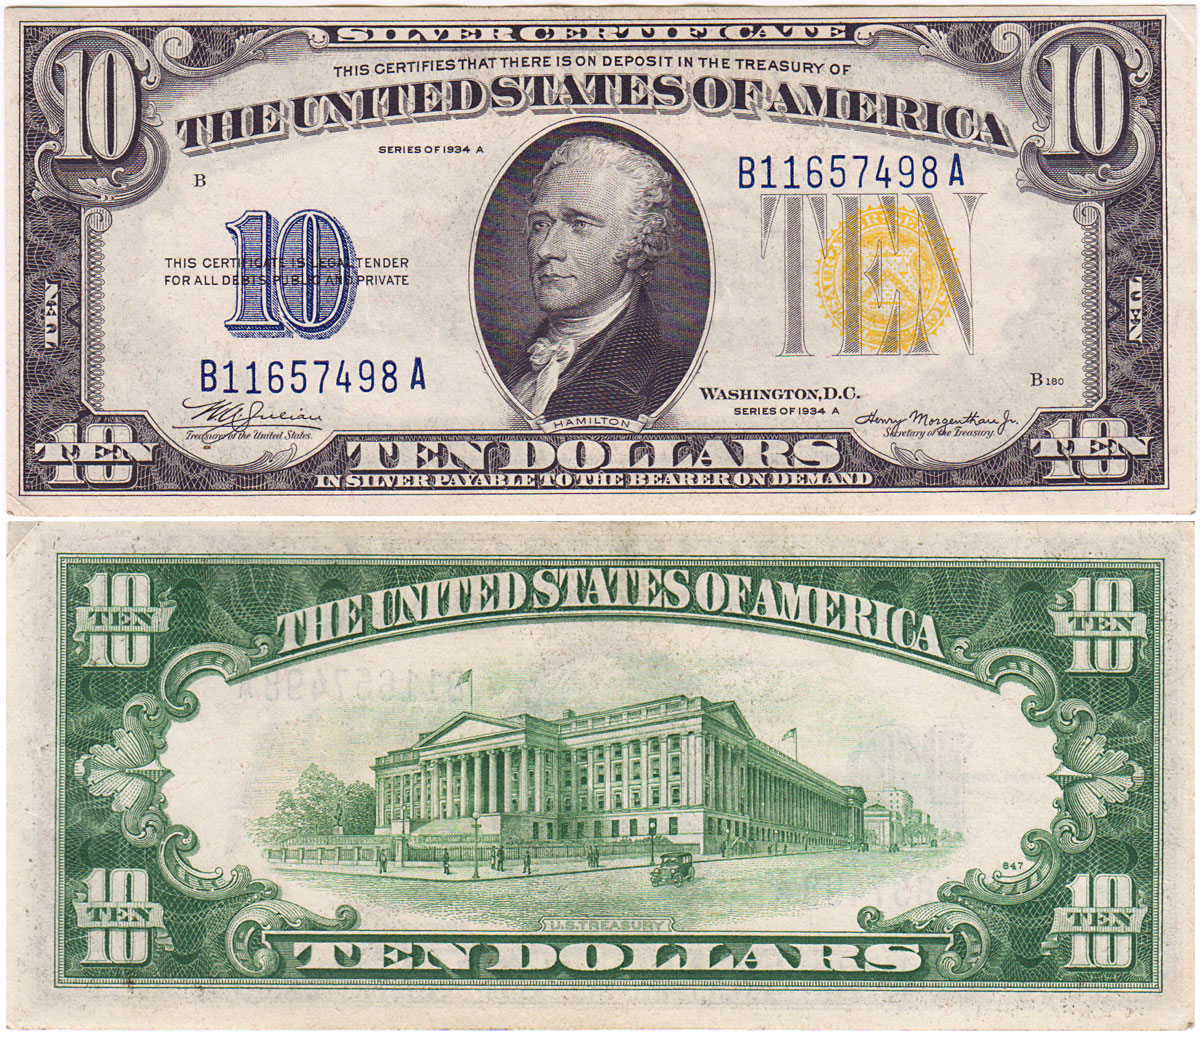 1 44 долларов. Купюра 10 долларов США. Новая 10 долларовая купюра. Изображение американского доллара. Американский доллар банкноты.